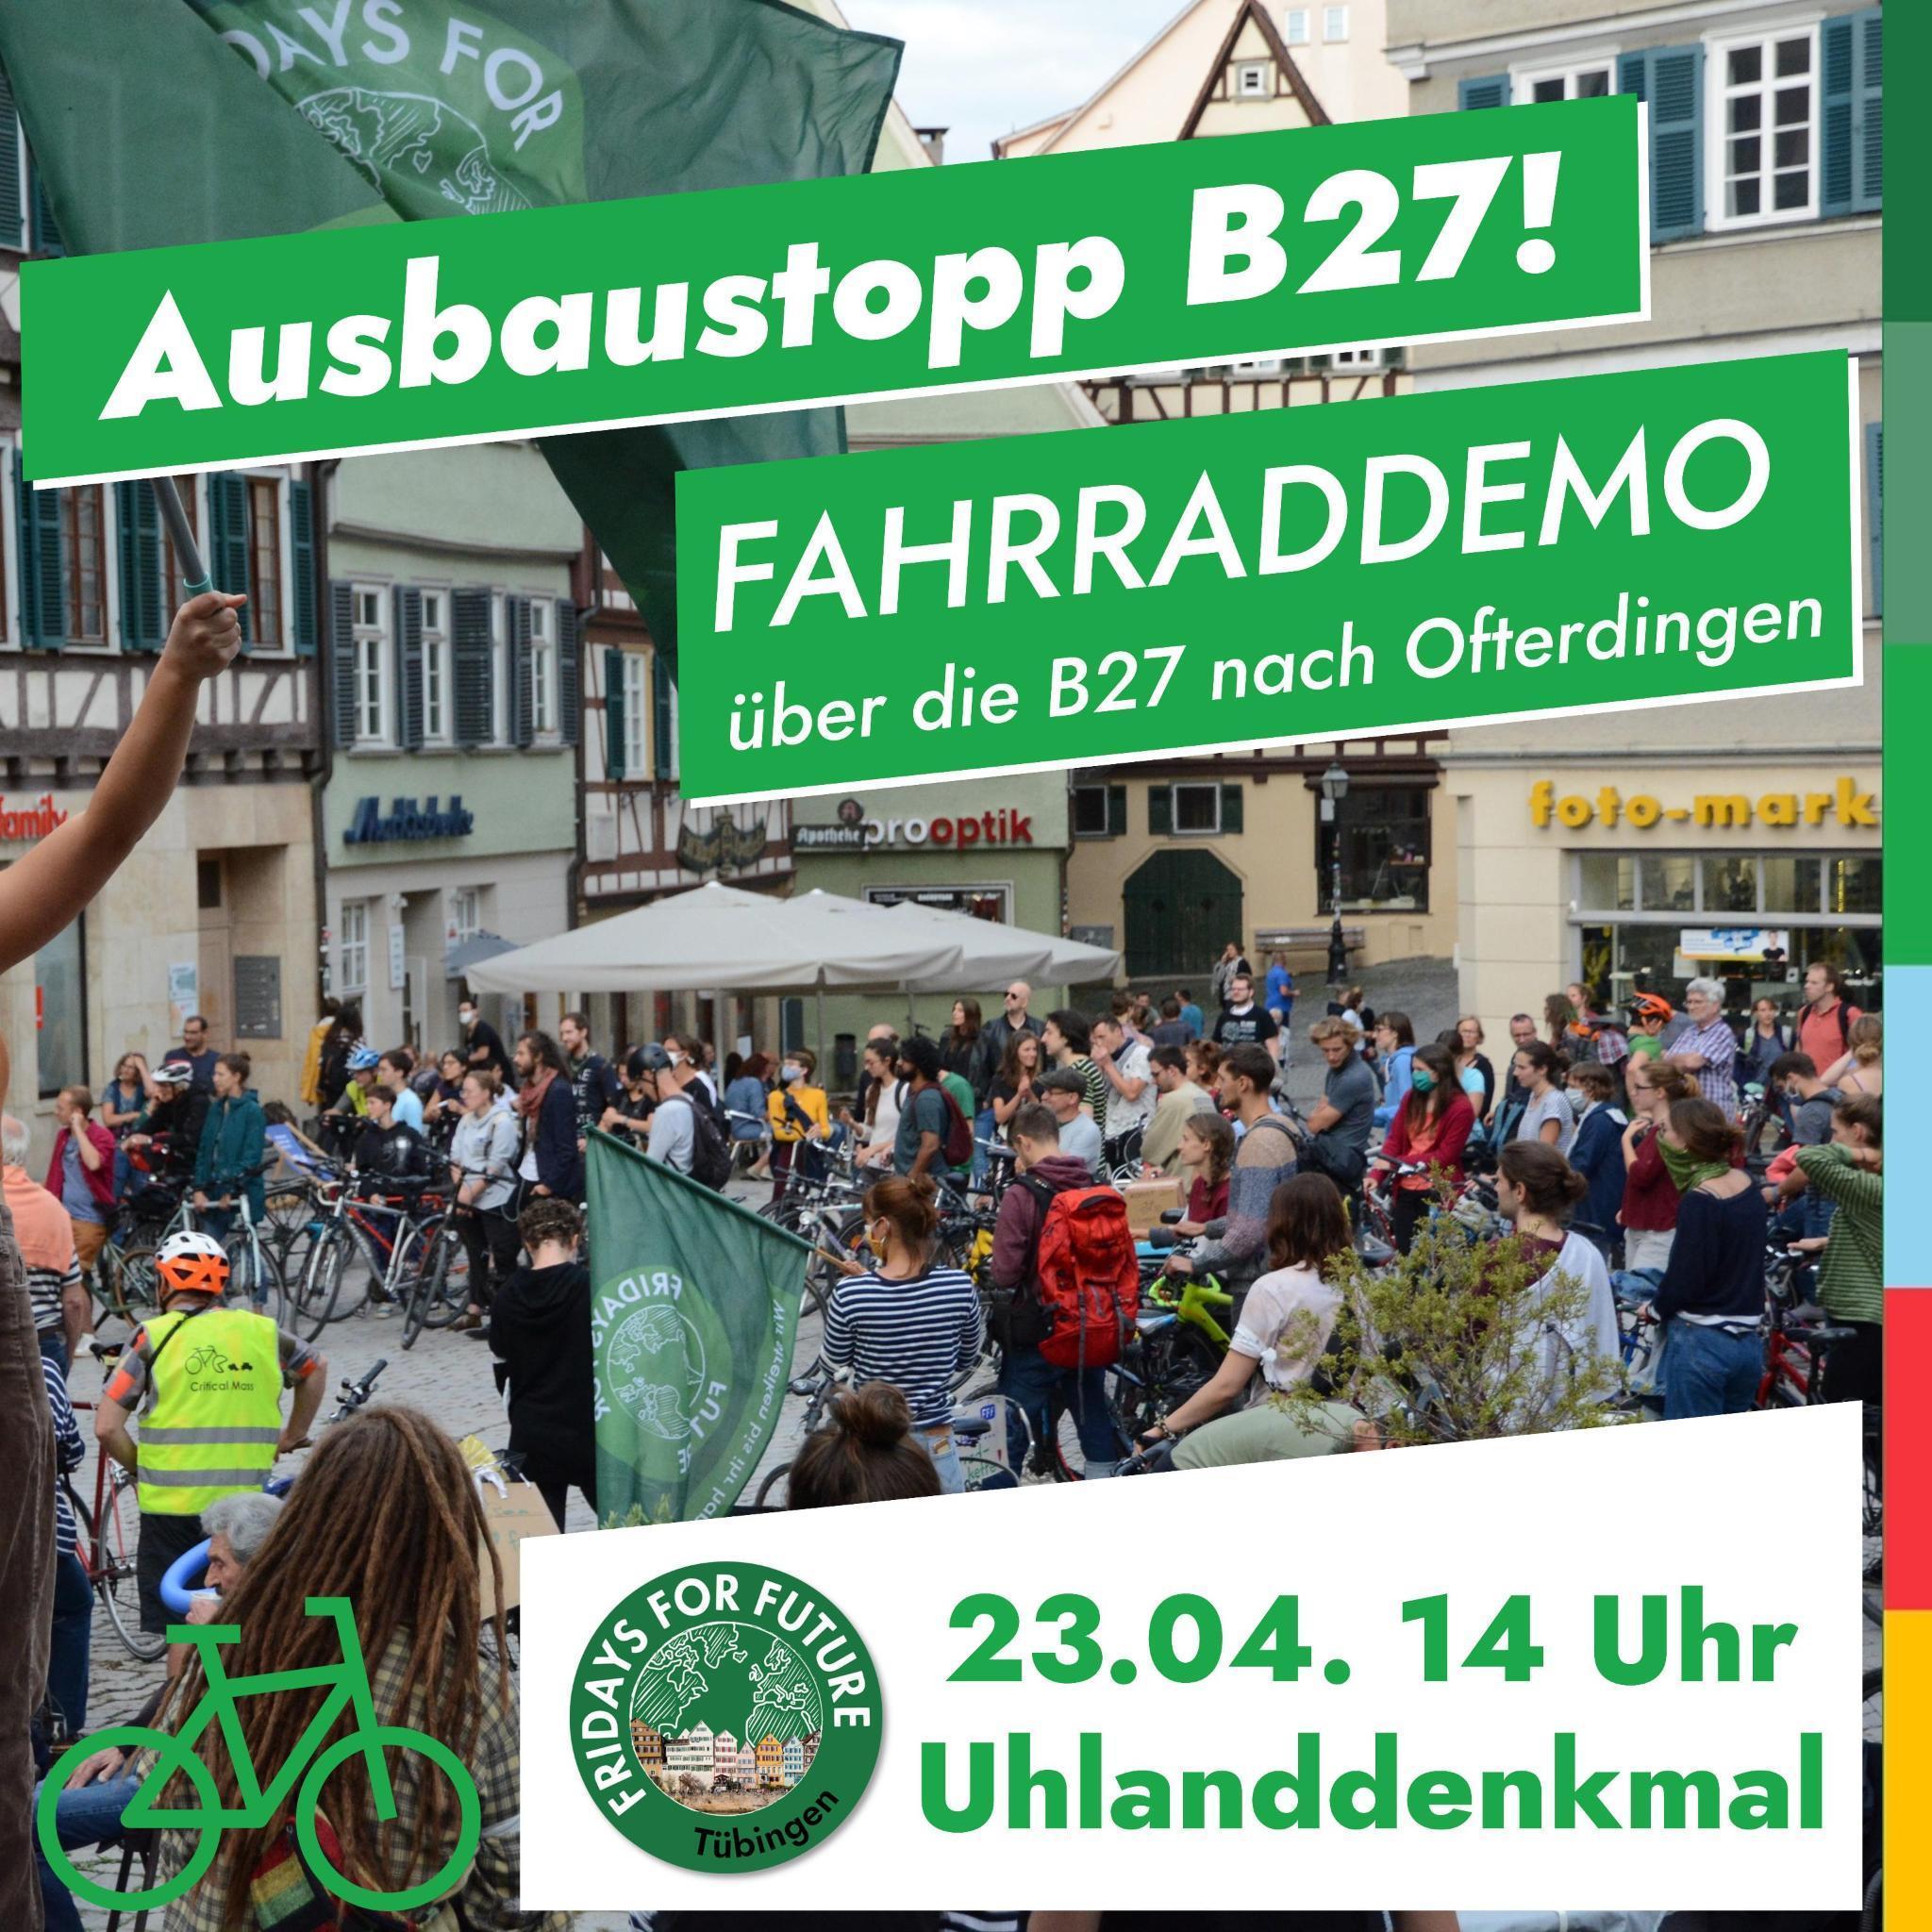 Raddemo gegen den B27-Ausbau am Sonntag, 23.4.